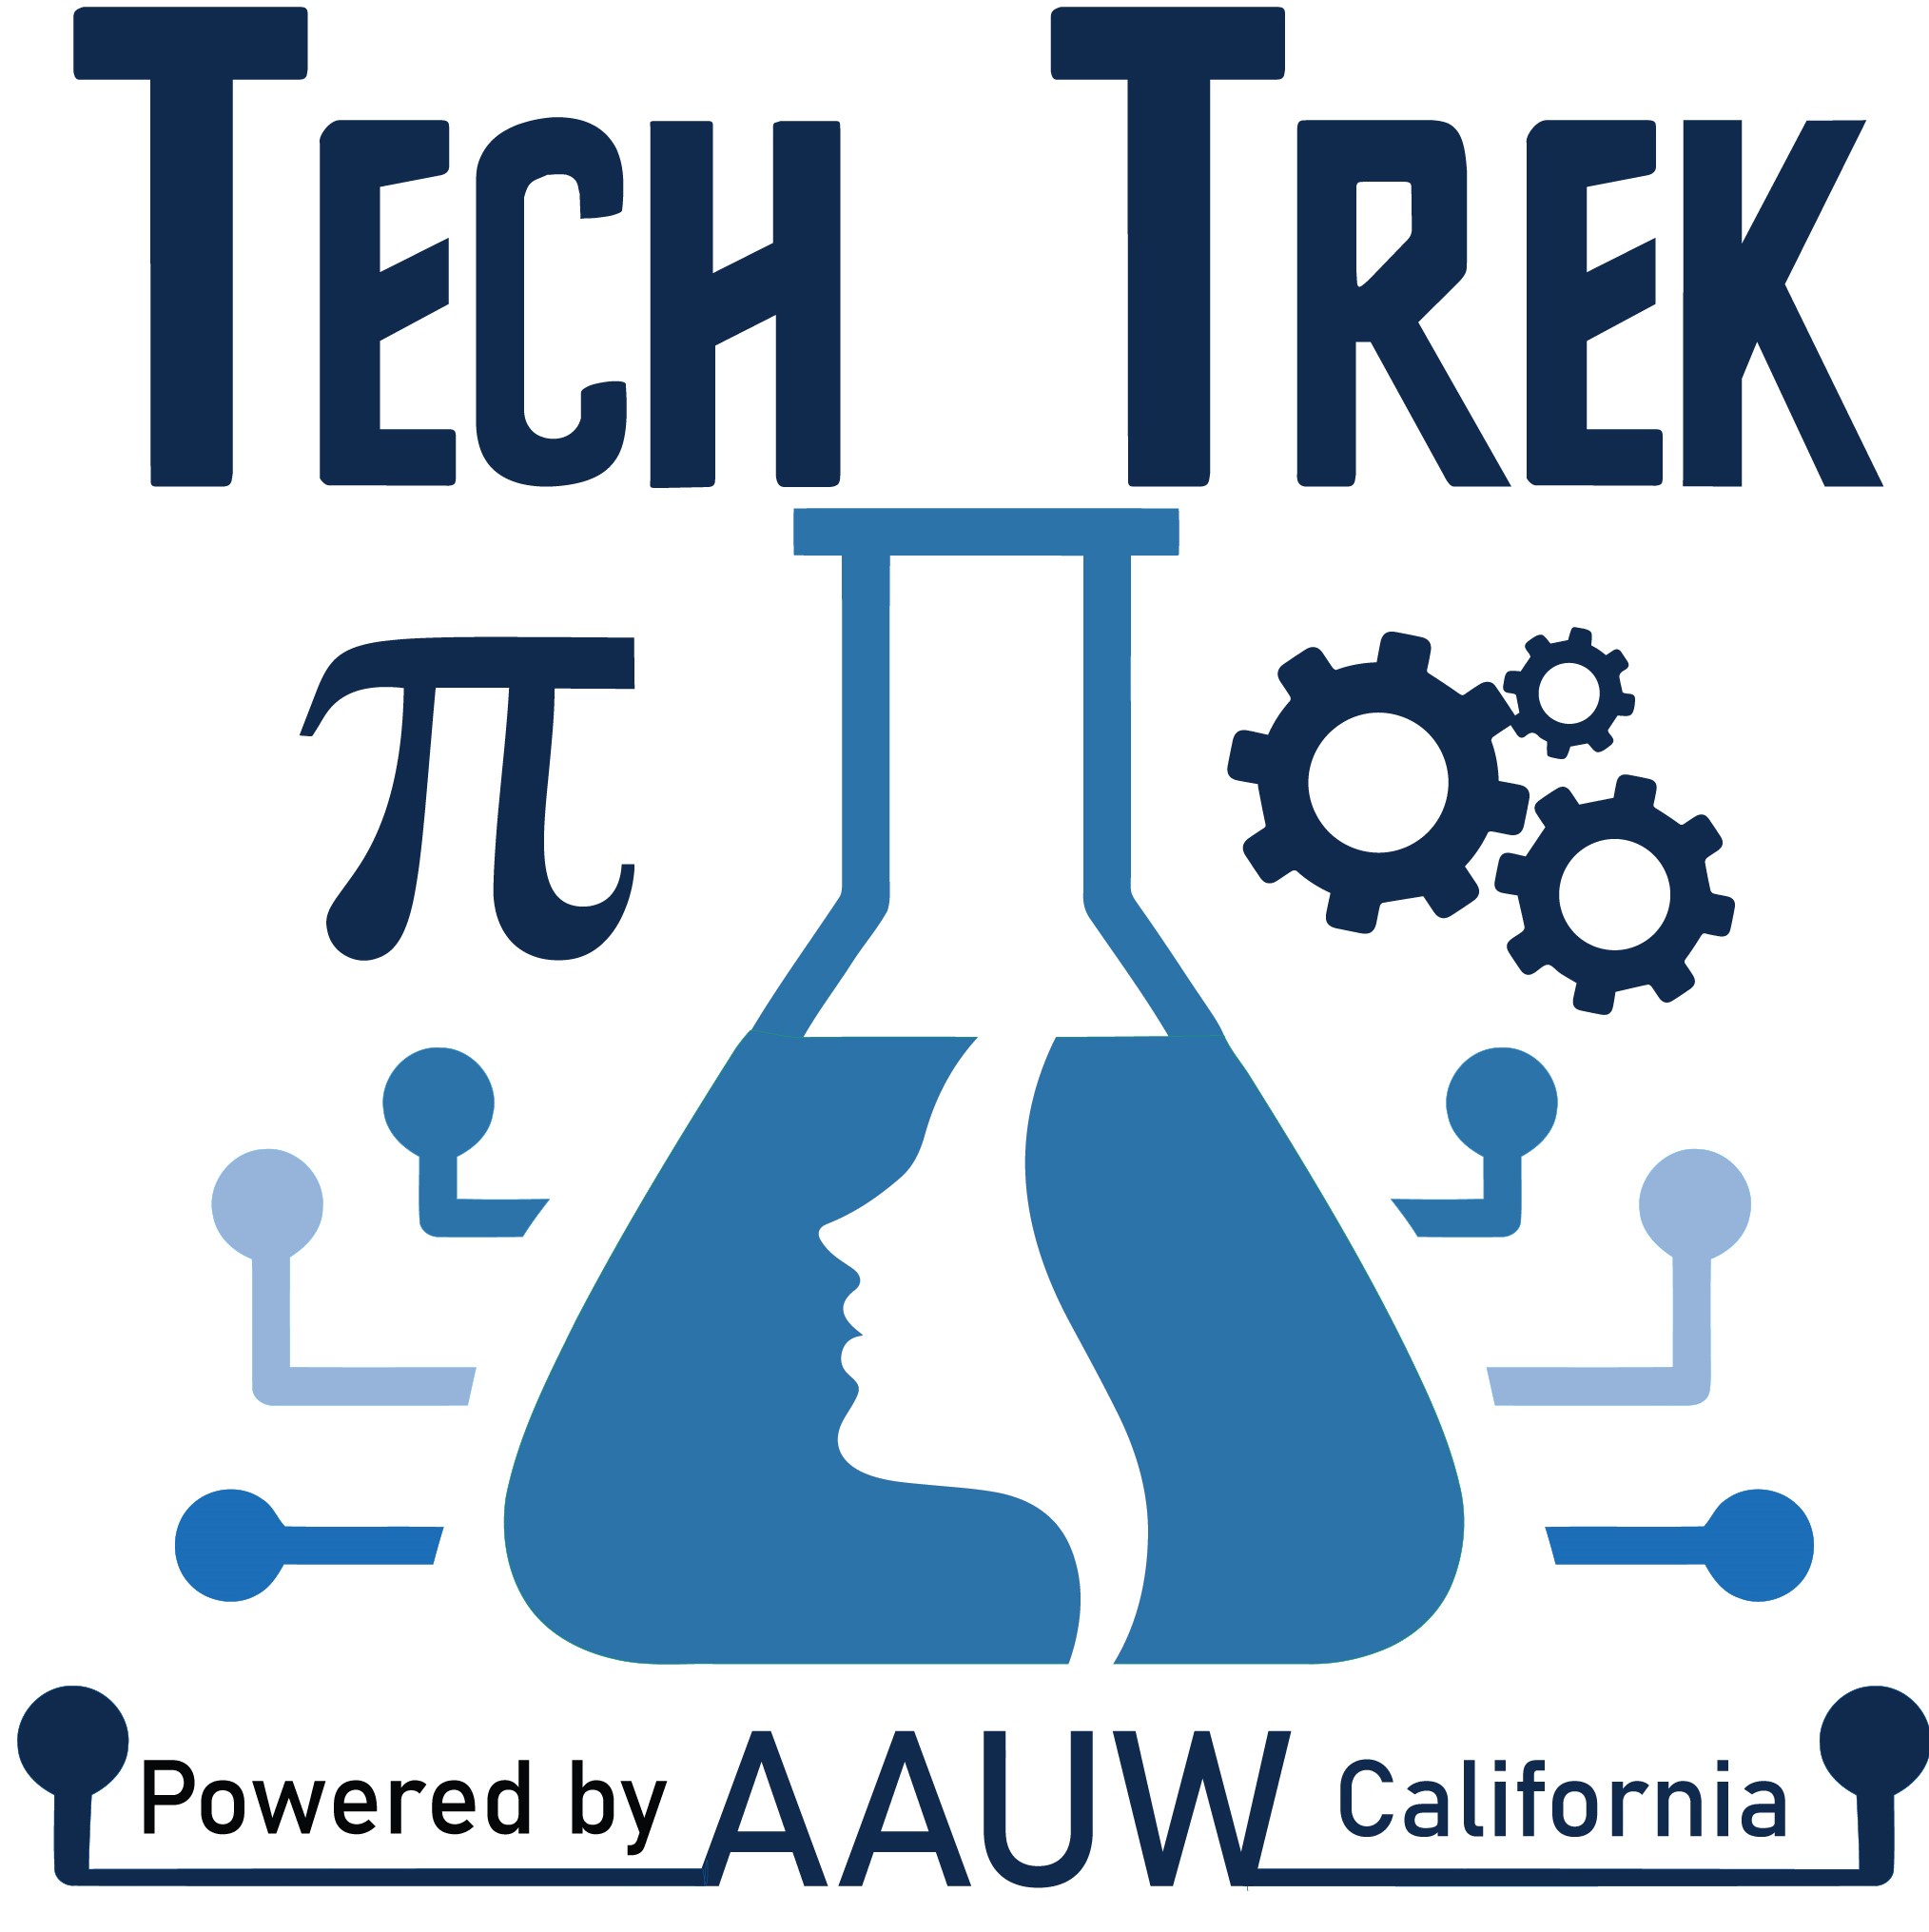 About Tech Trek AAUW California